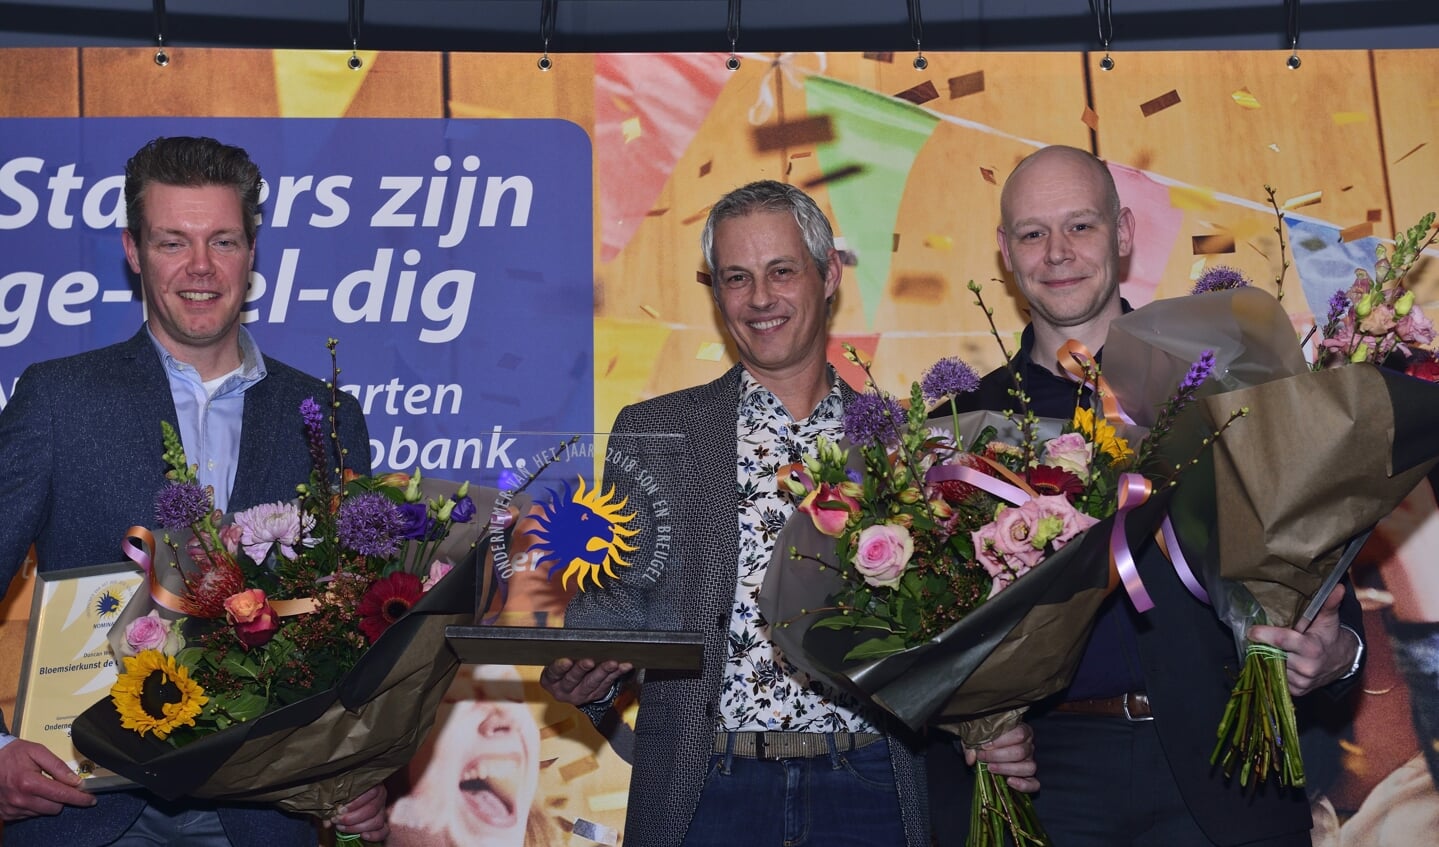 Ondenemersverkiezing 2018, Duncan Wijers (l), winnaar Koen Sol (m) en Erik van den Berg (r)